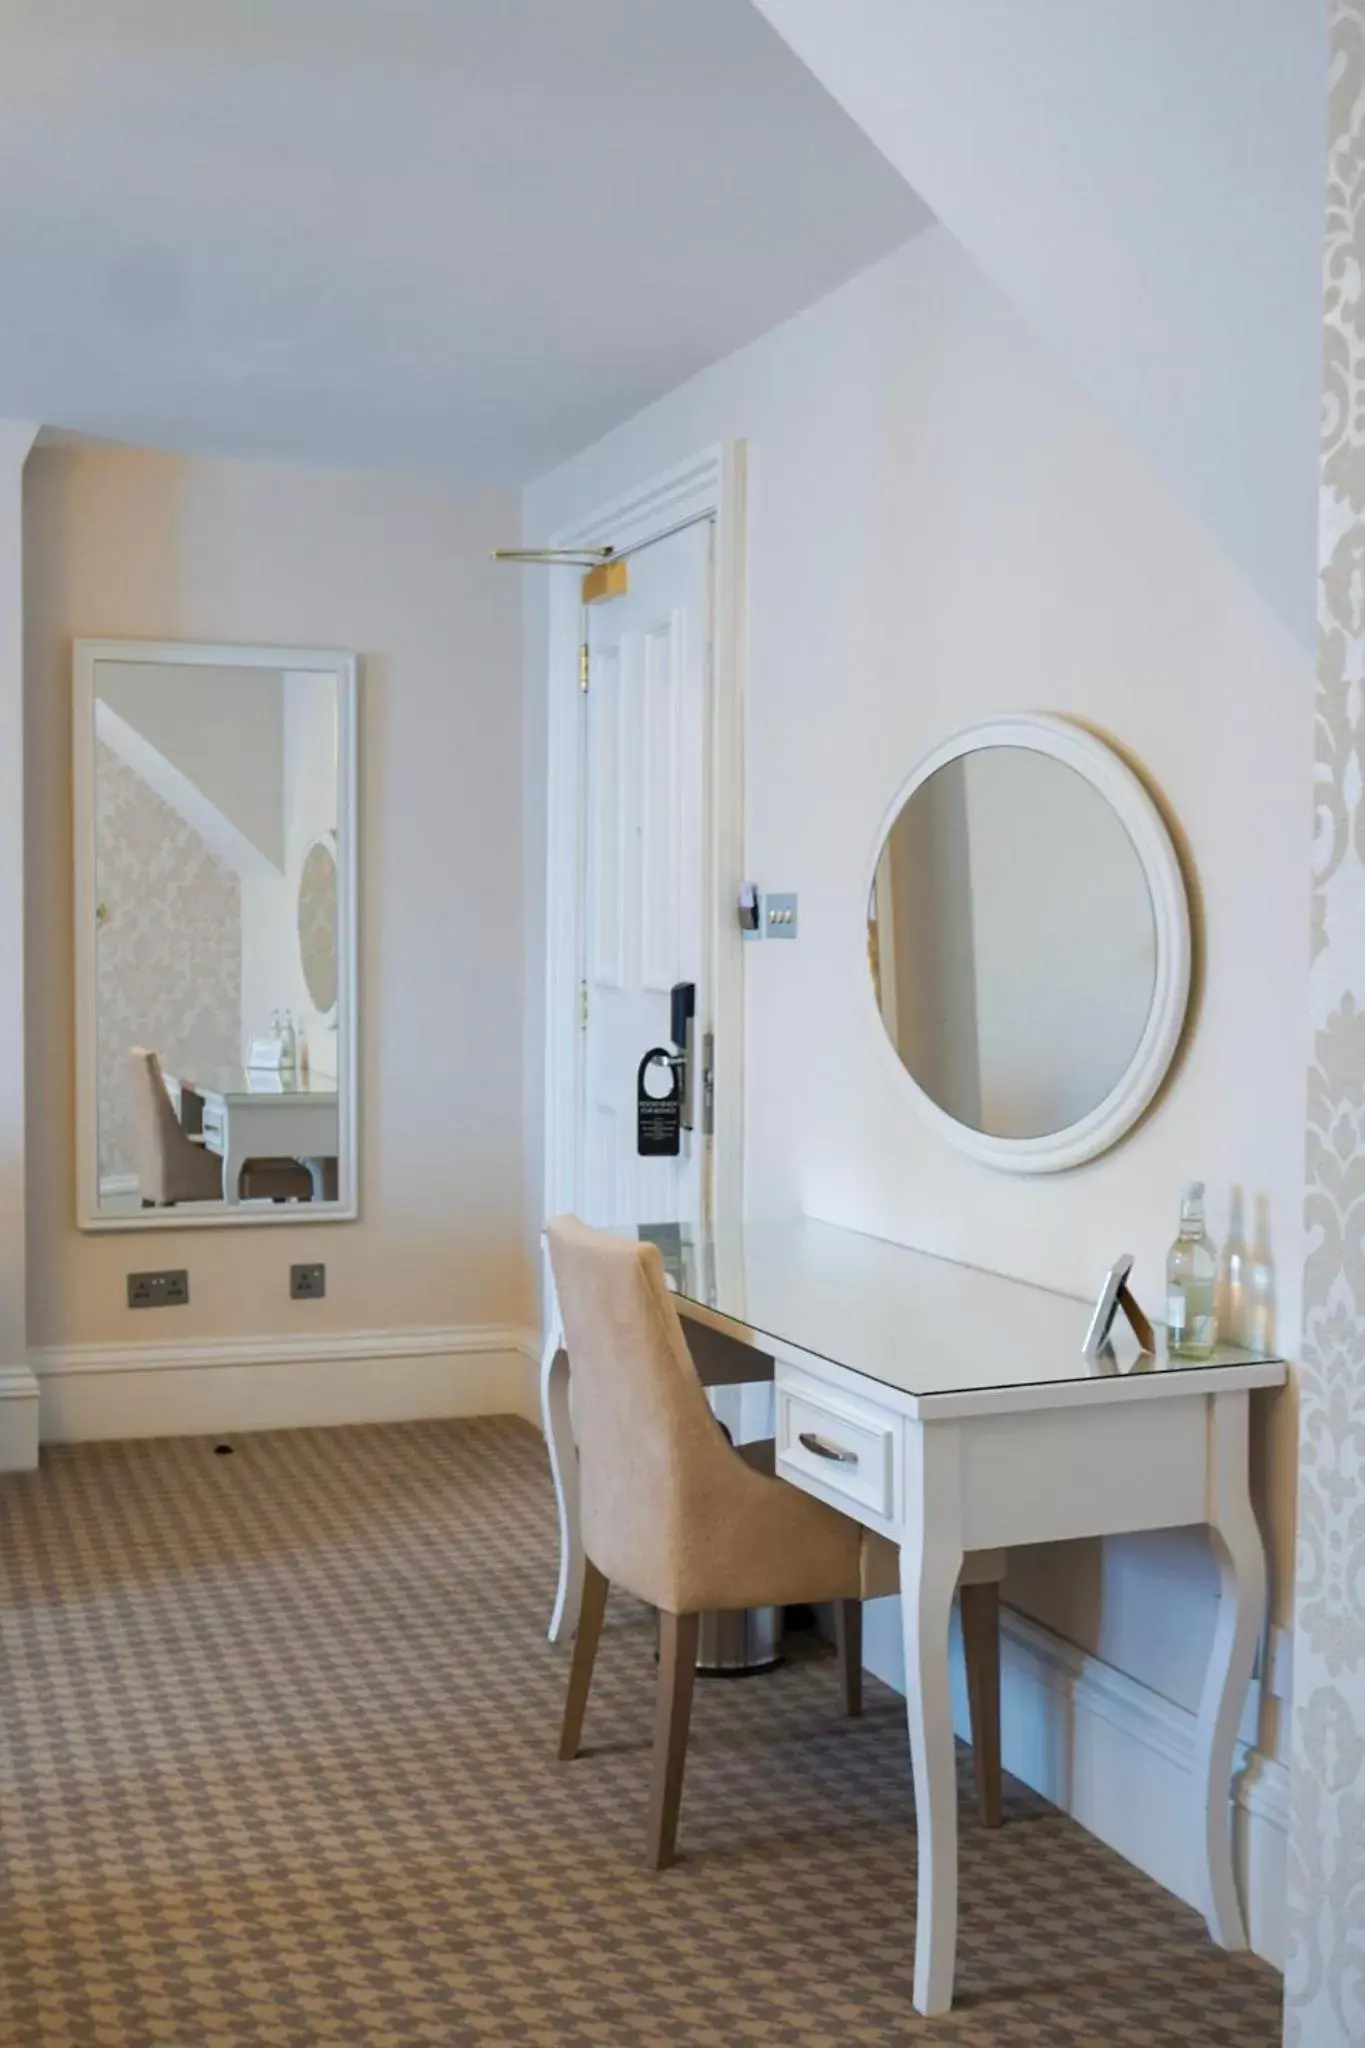 Bedroom, Bathroom in Wroxall Abbey Hotel